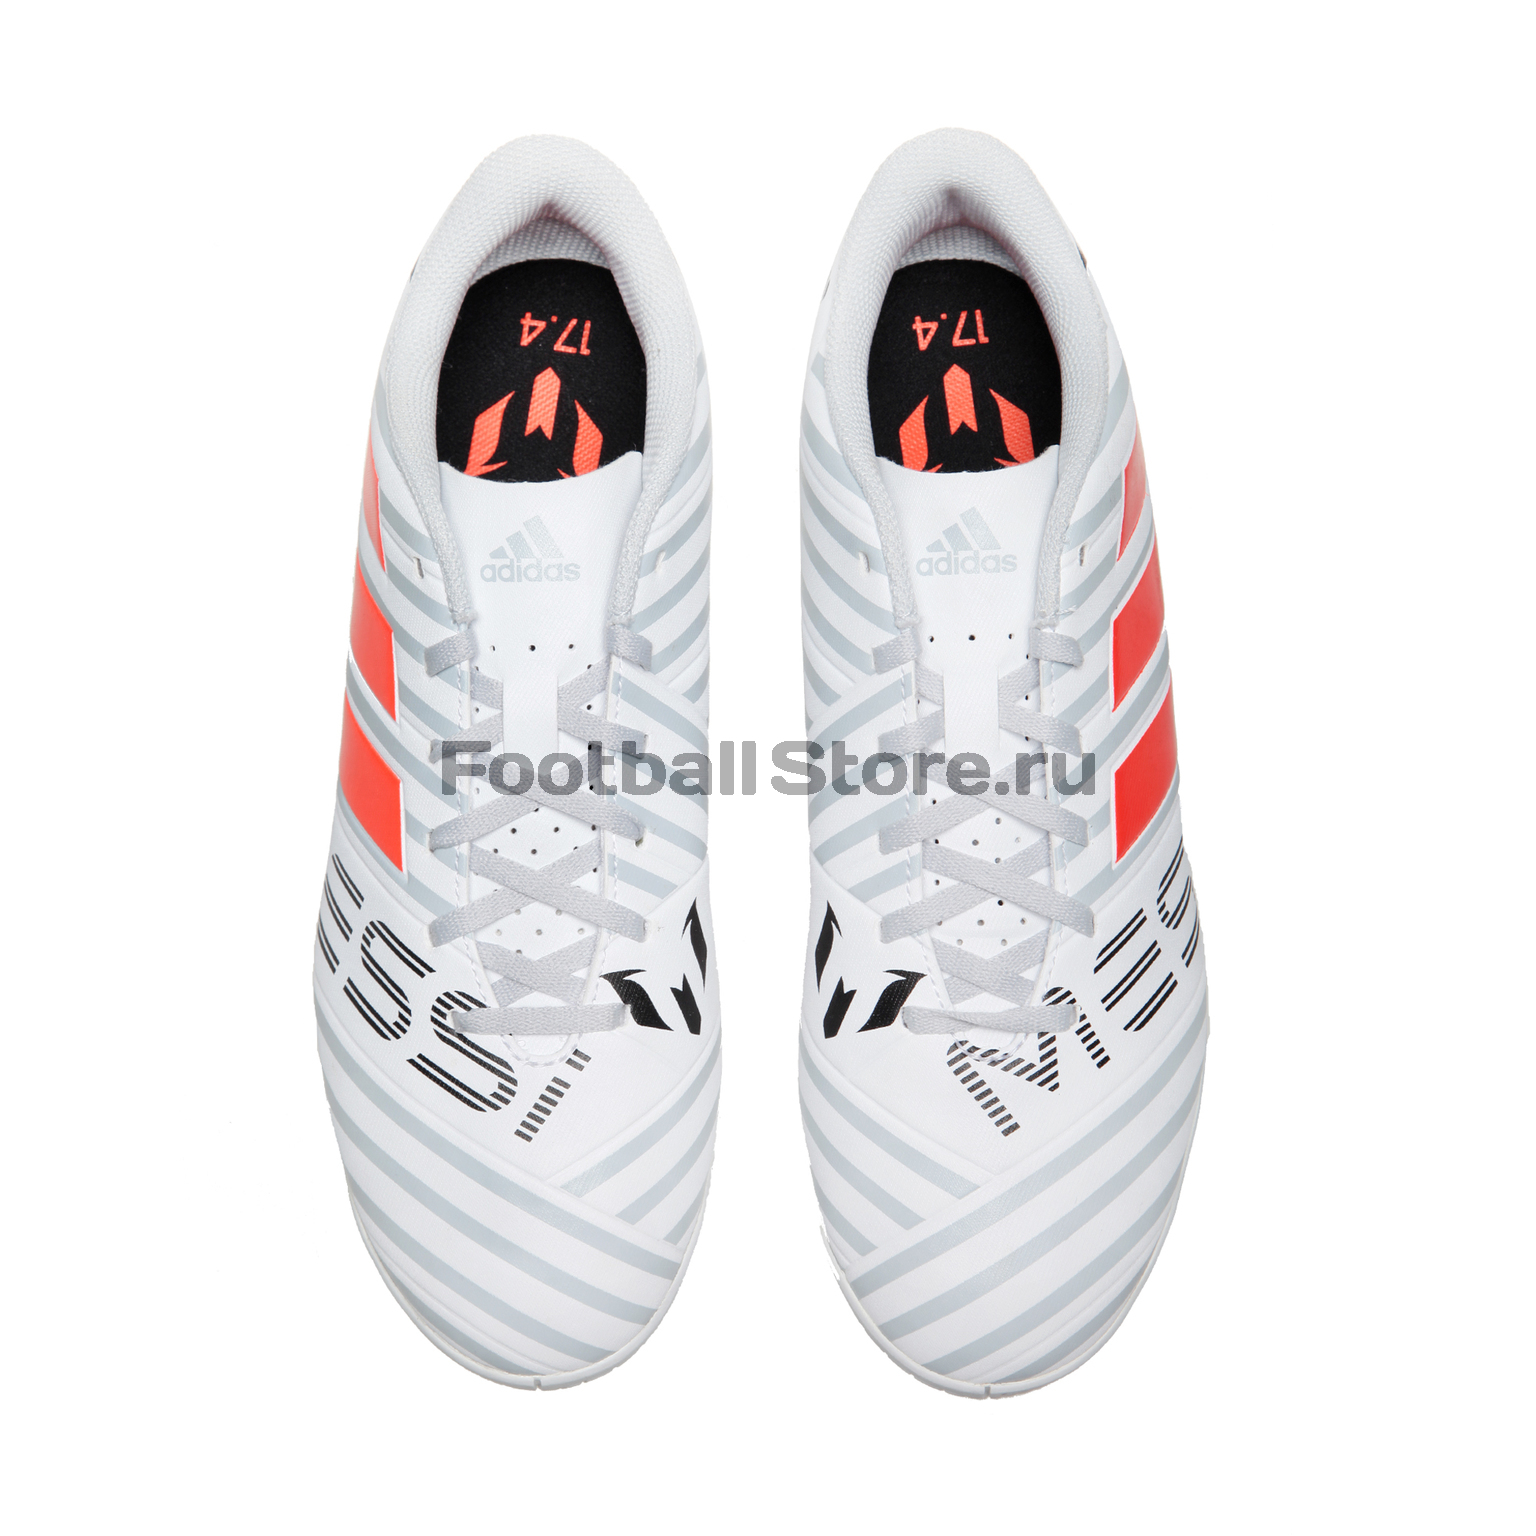 Обувь для зала Adidas Nemeziz Messi 17.4 IN S77203 